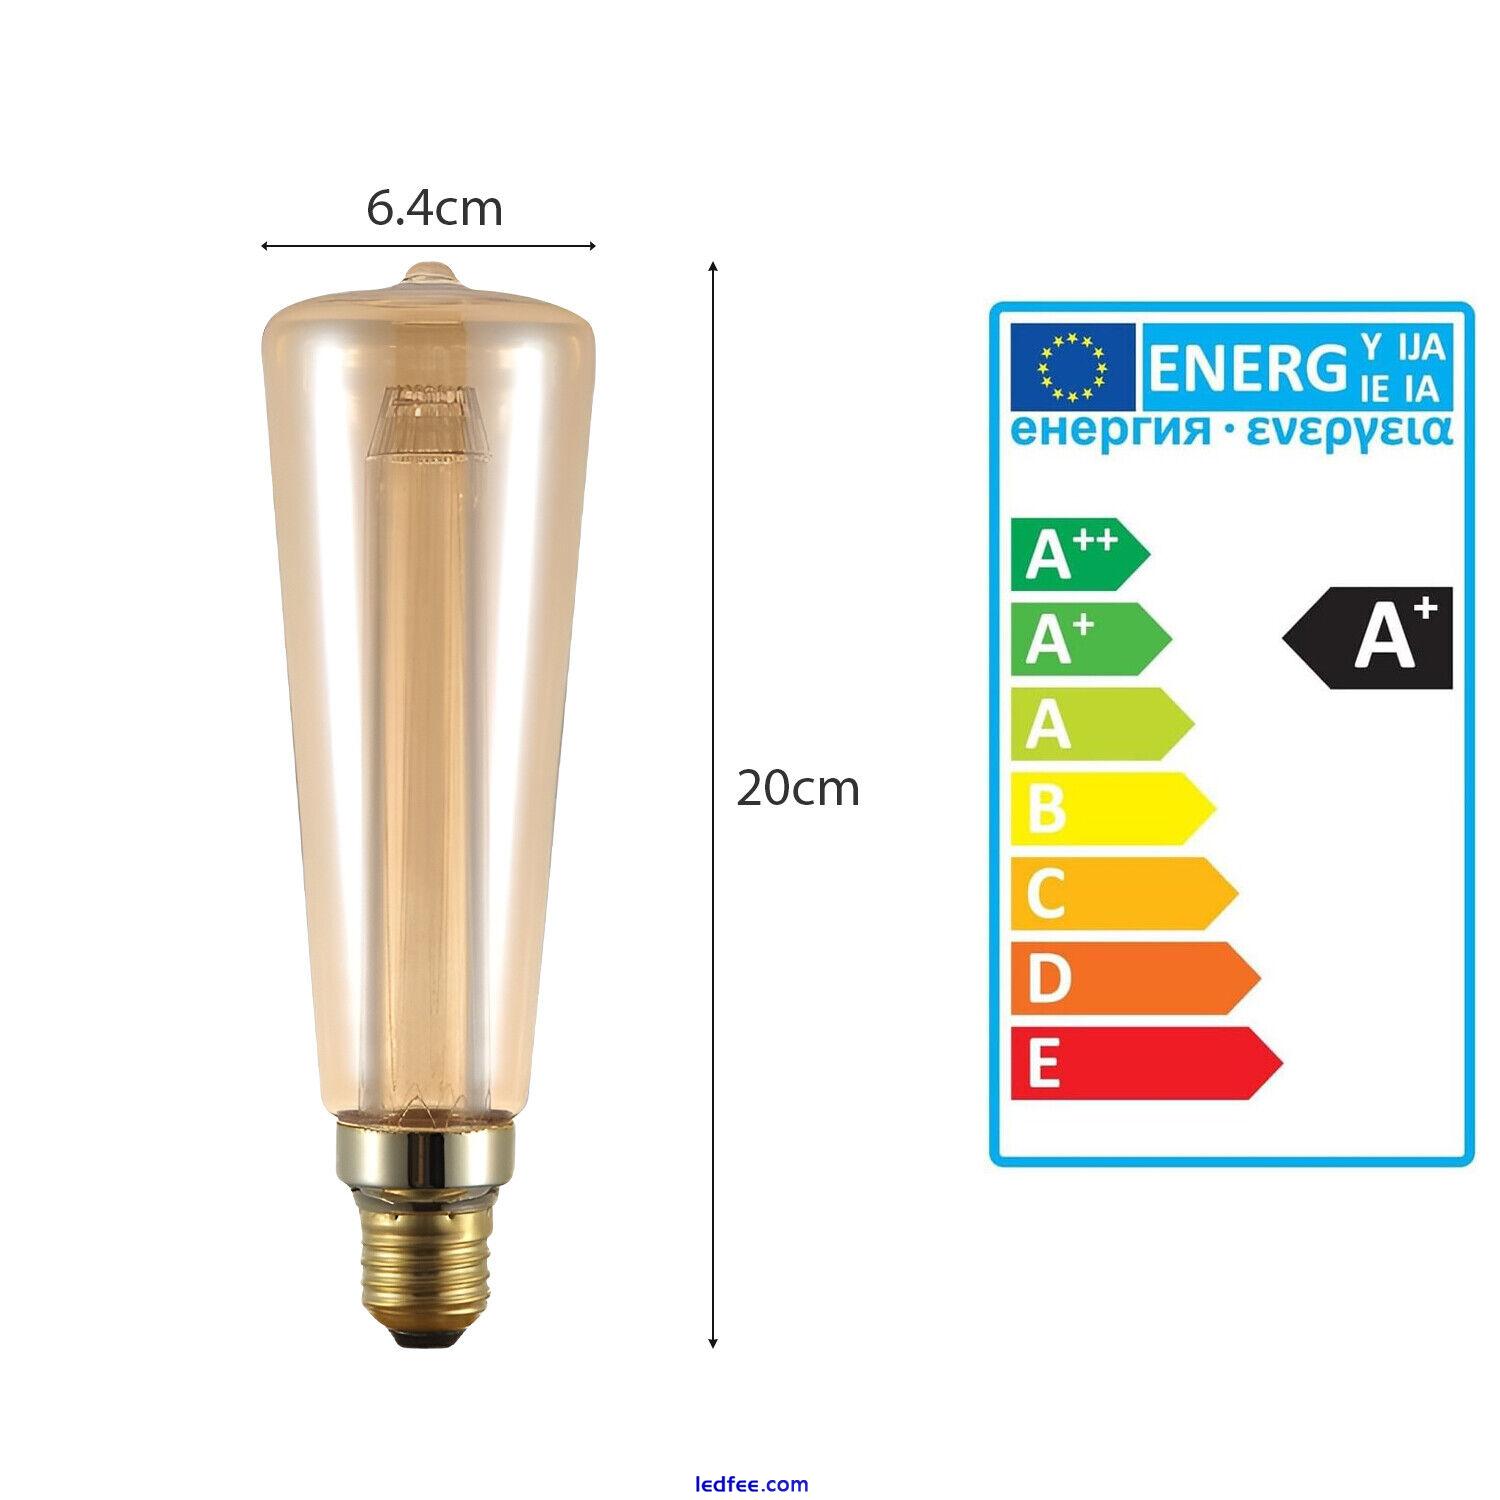 LED Decorative Vintage Bulb Edison LED Filament Light Bulbs Amber Glass E27 3W 1 